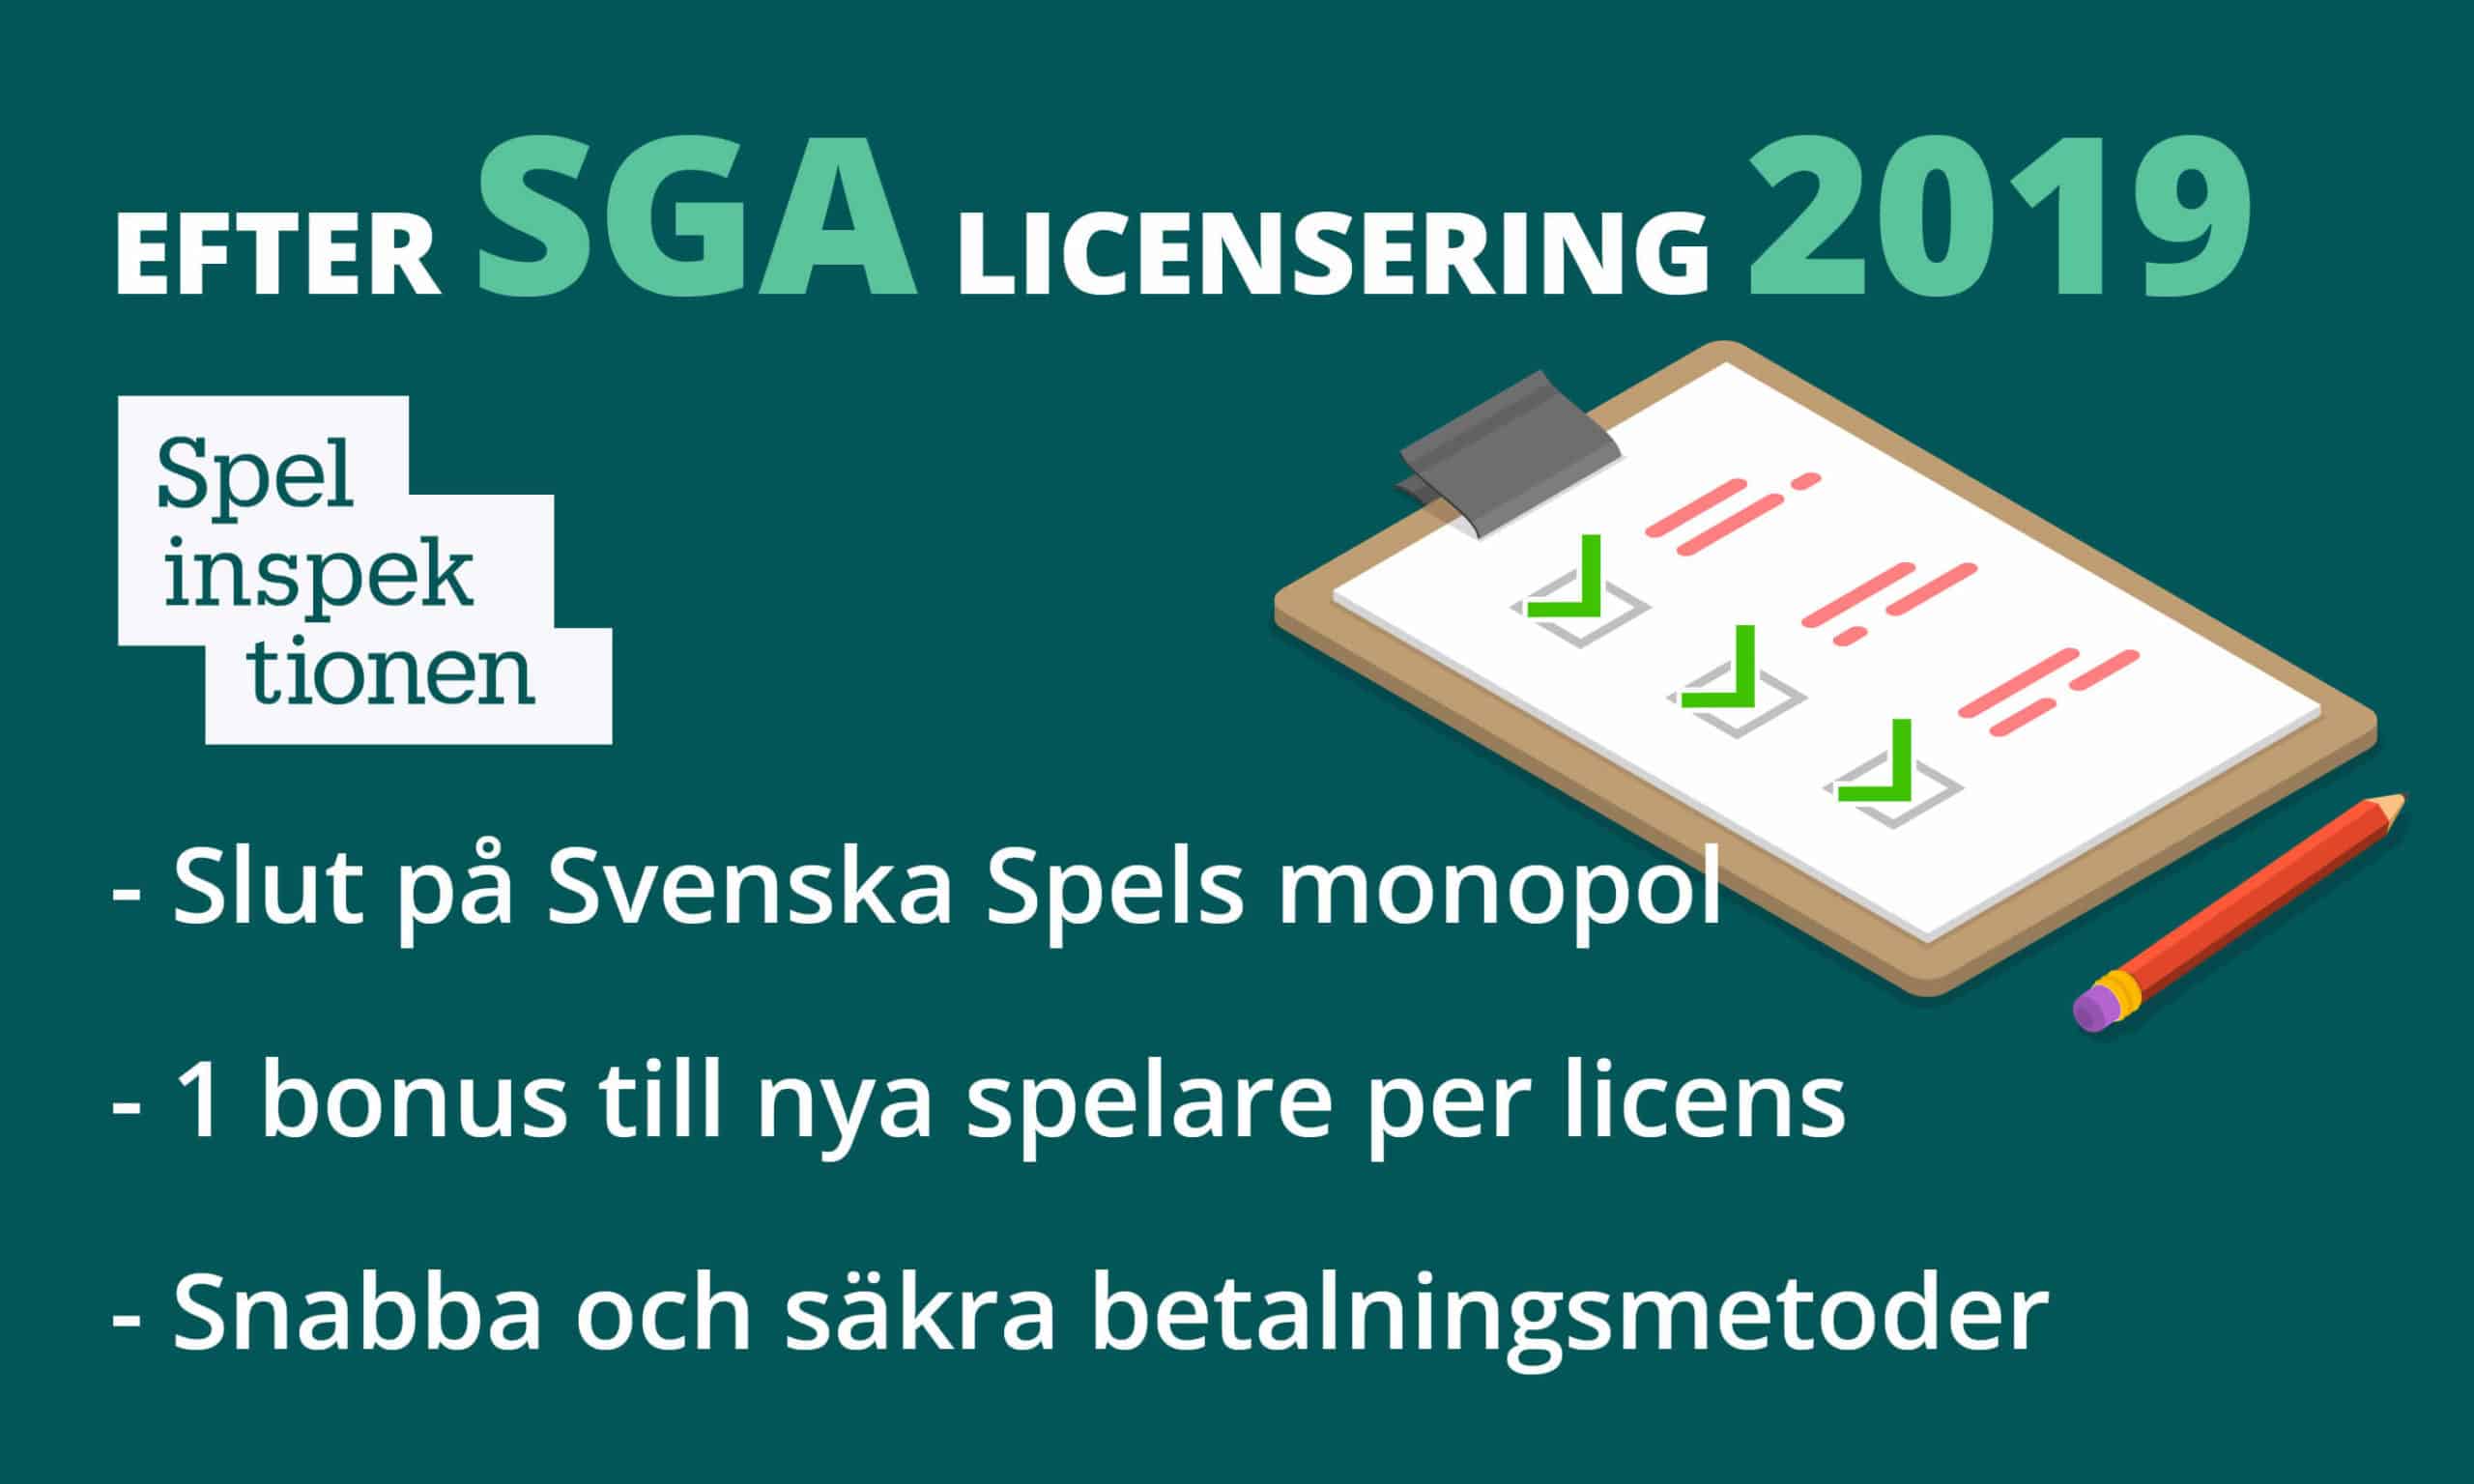 historia och utveckling av svenska casinon - efter sga licensering 2019